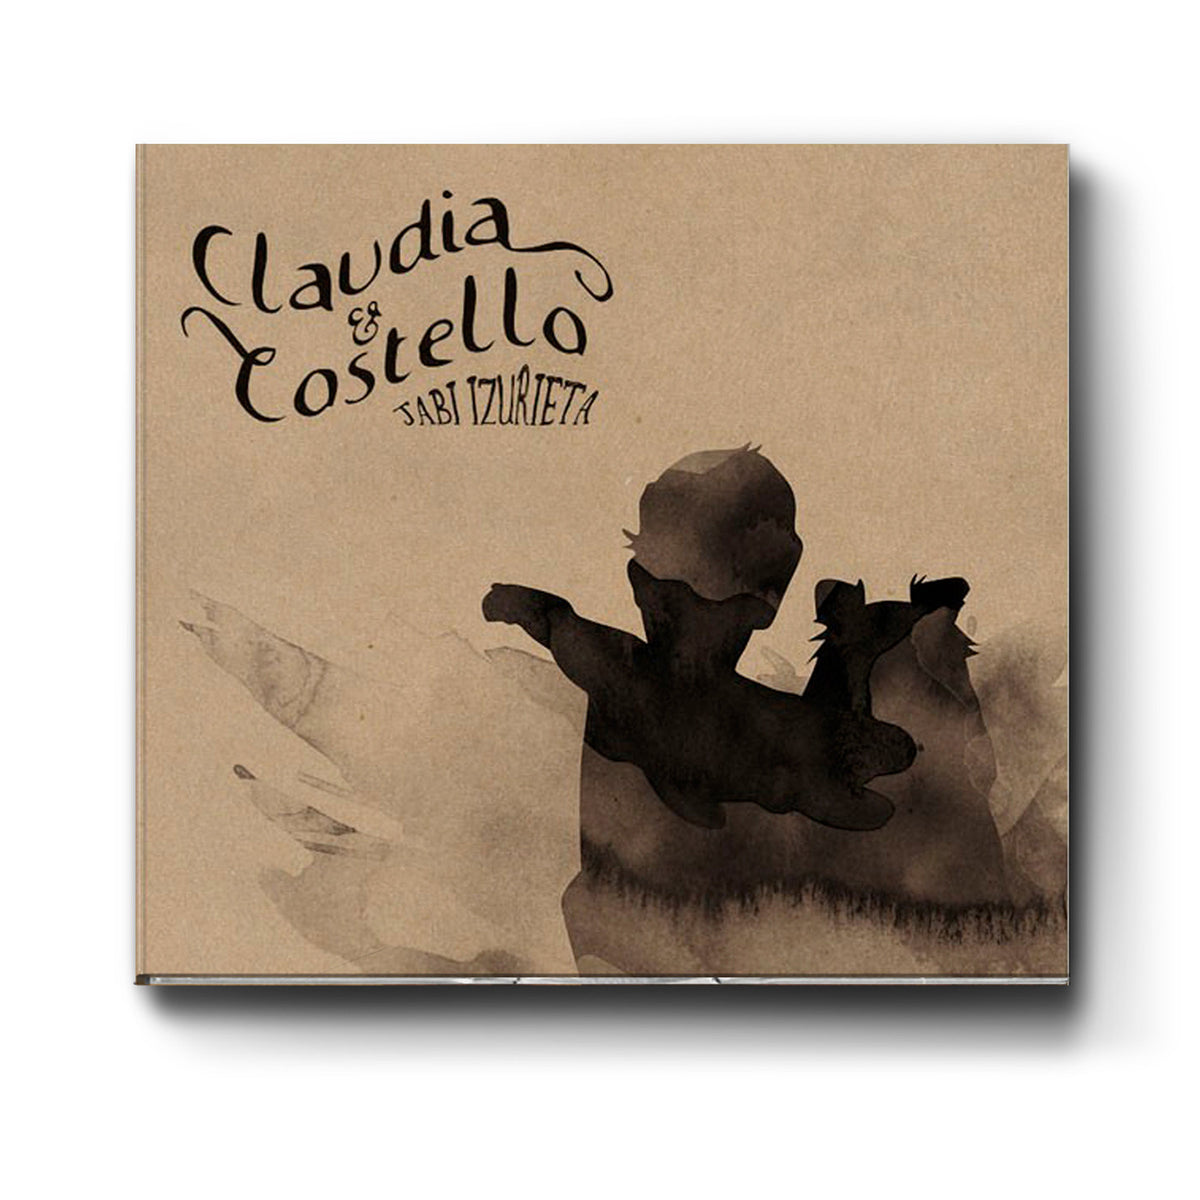 Claudia & Costello